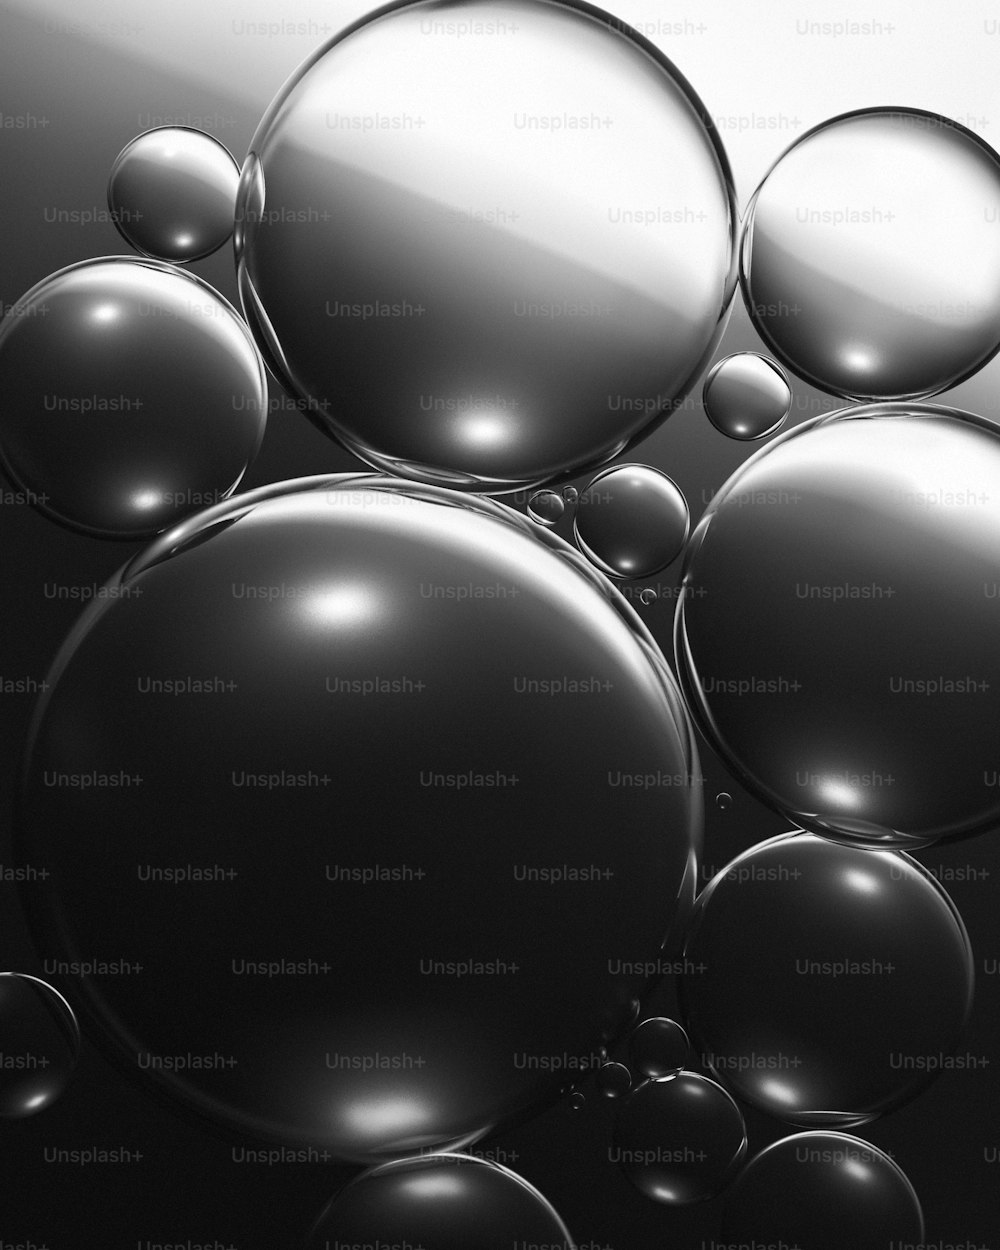 Ein Schwarz-Weiß-Foto von einem Haufen Blasen